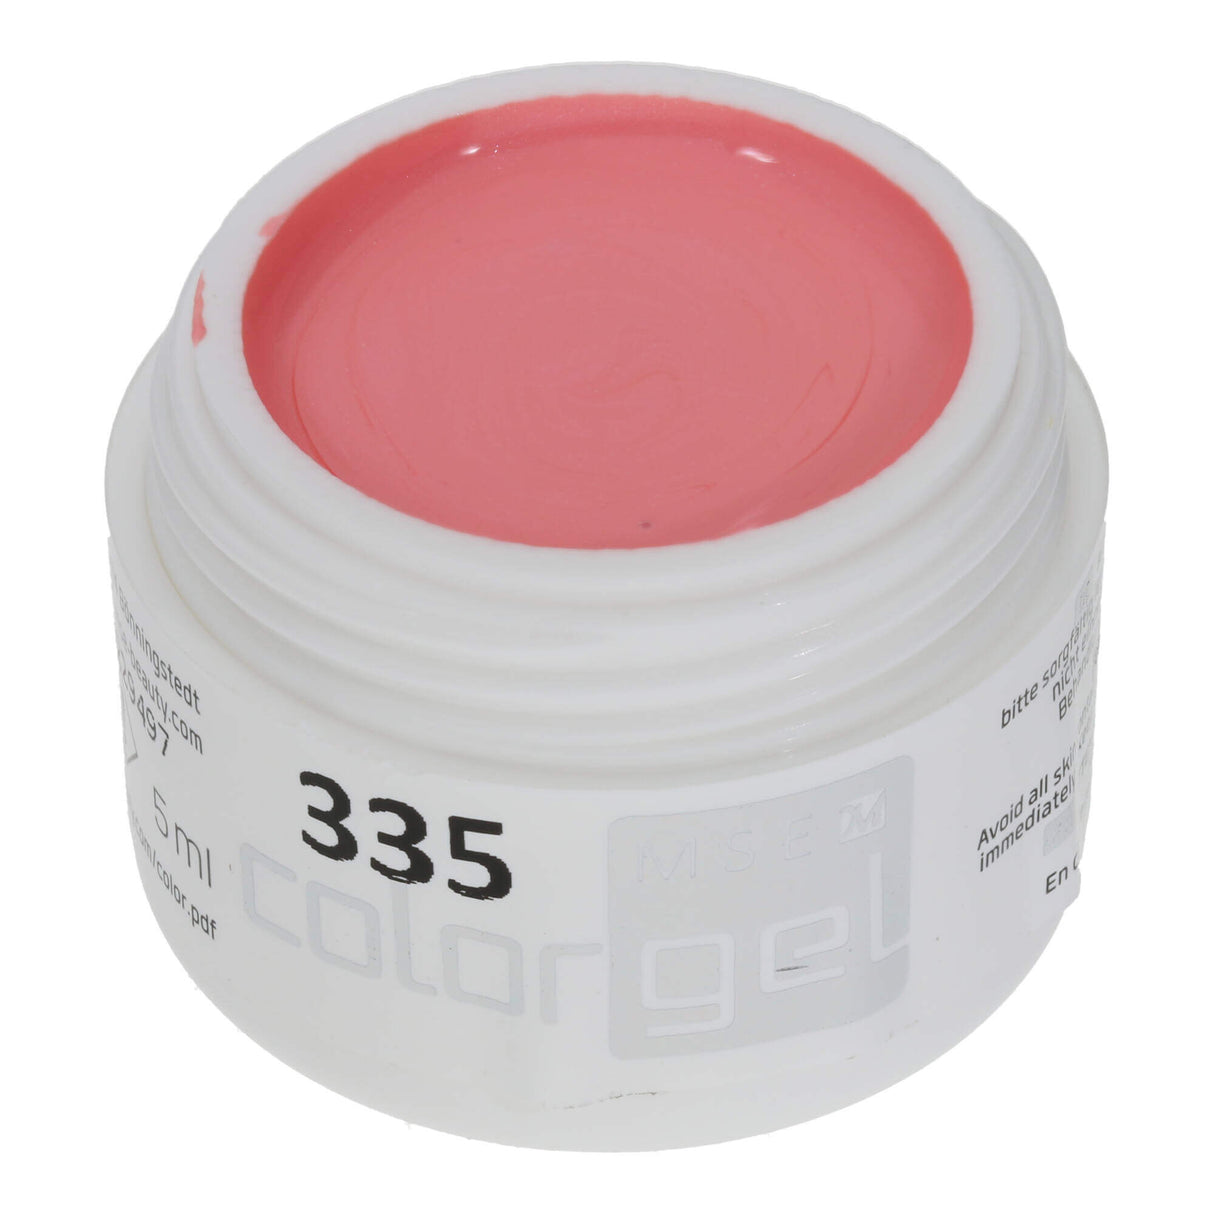 # 335 Premium EFFECT Color Gel 5ml Rose clair avec un effet nacré très subtil